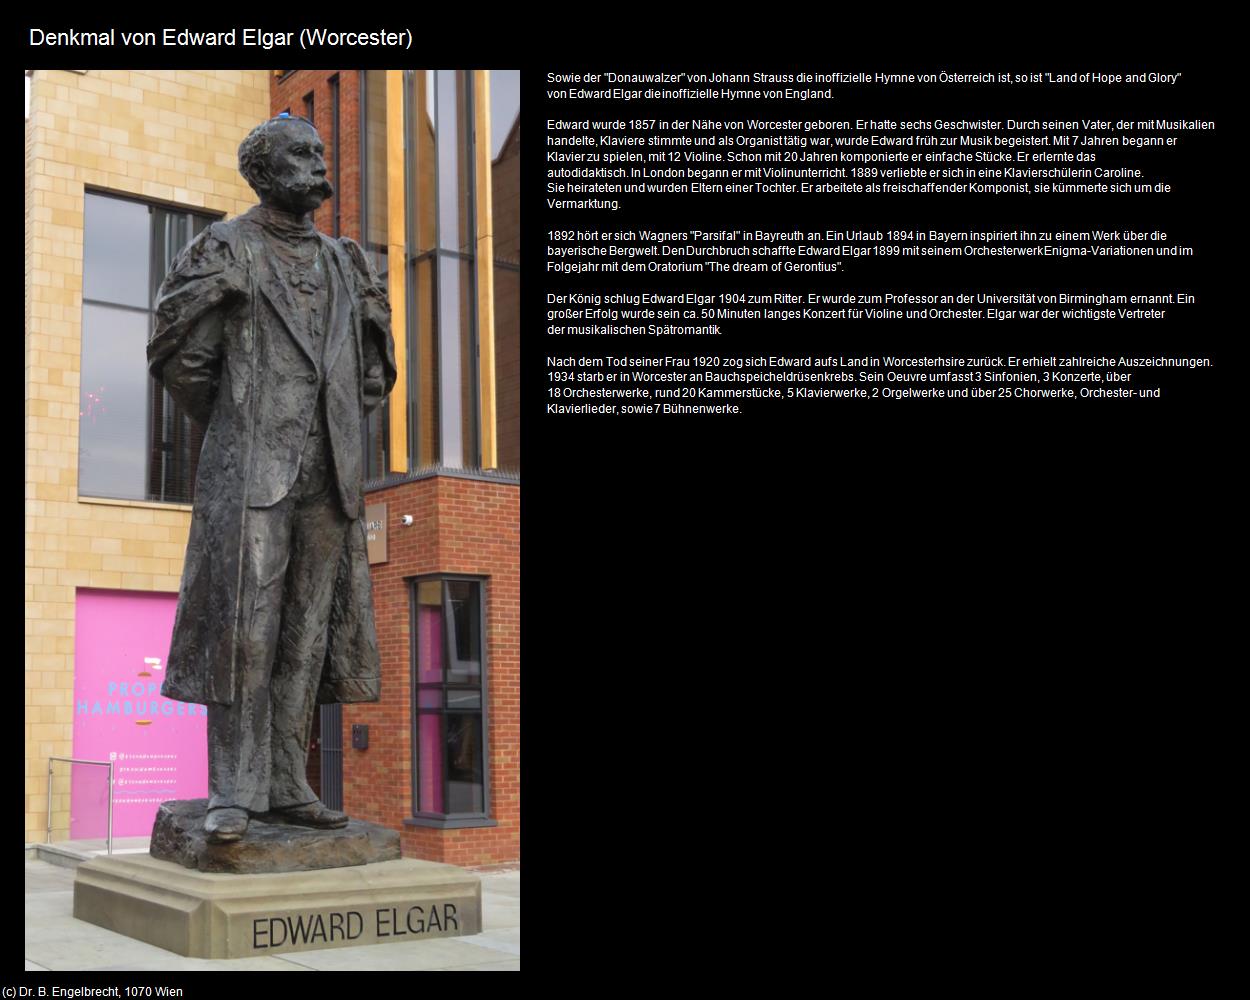 Denkmal von Edward Elgar (Worcester, England) in Kulturatlas-ENGLAND und WALES